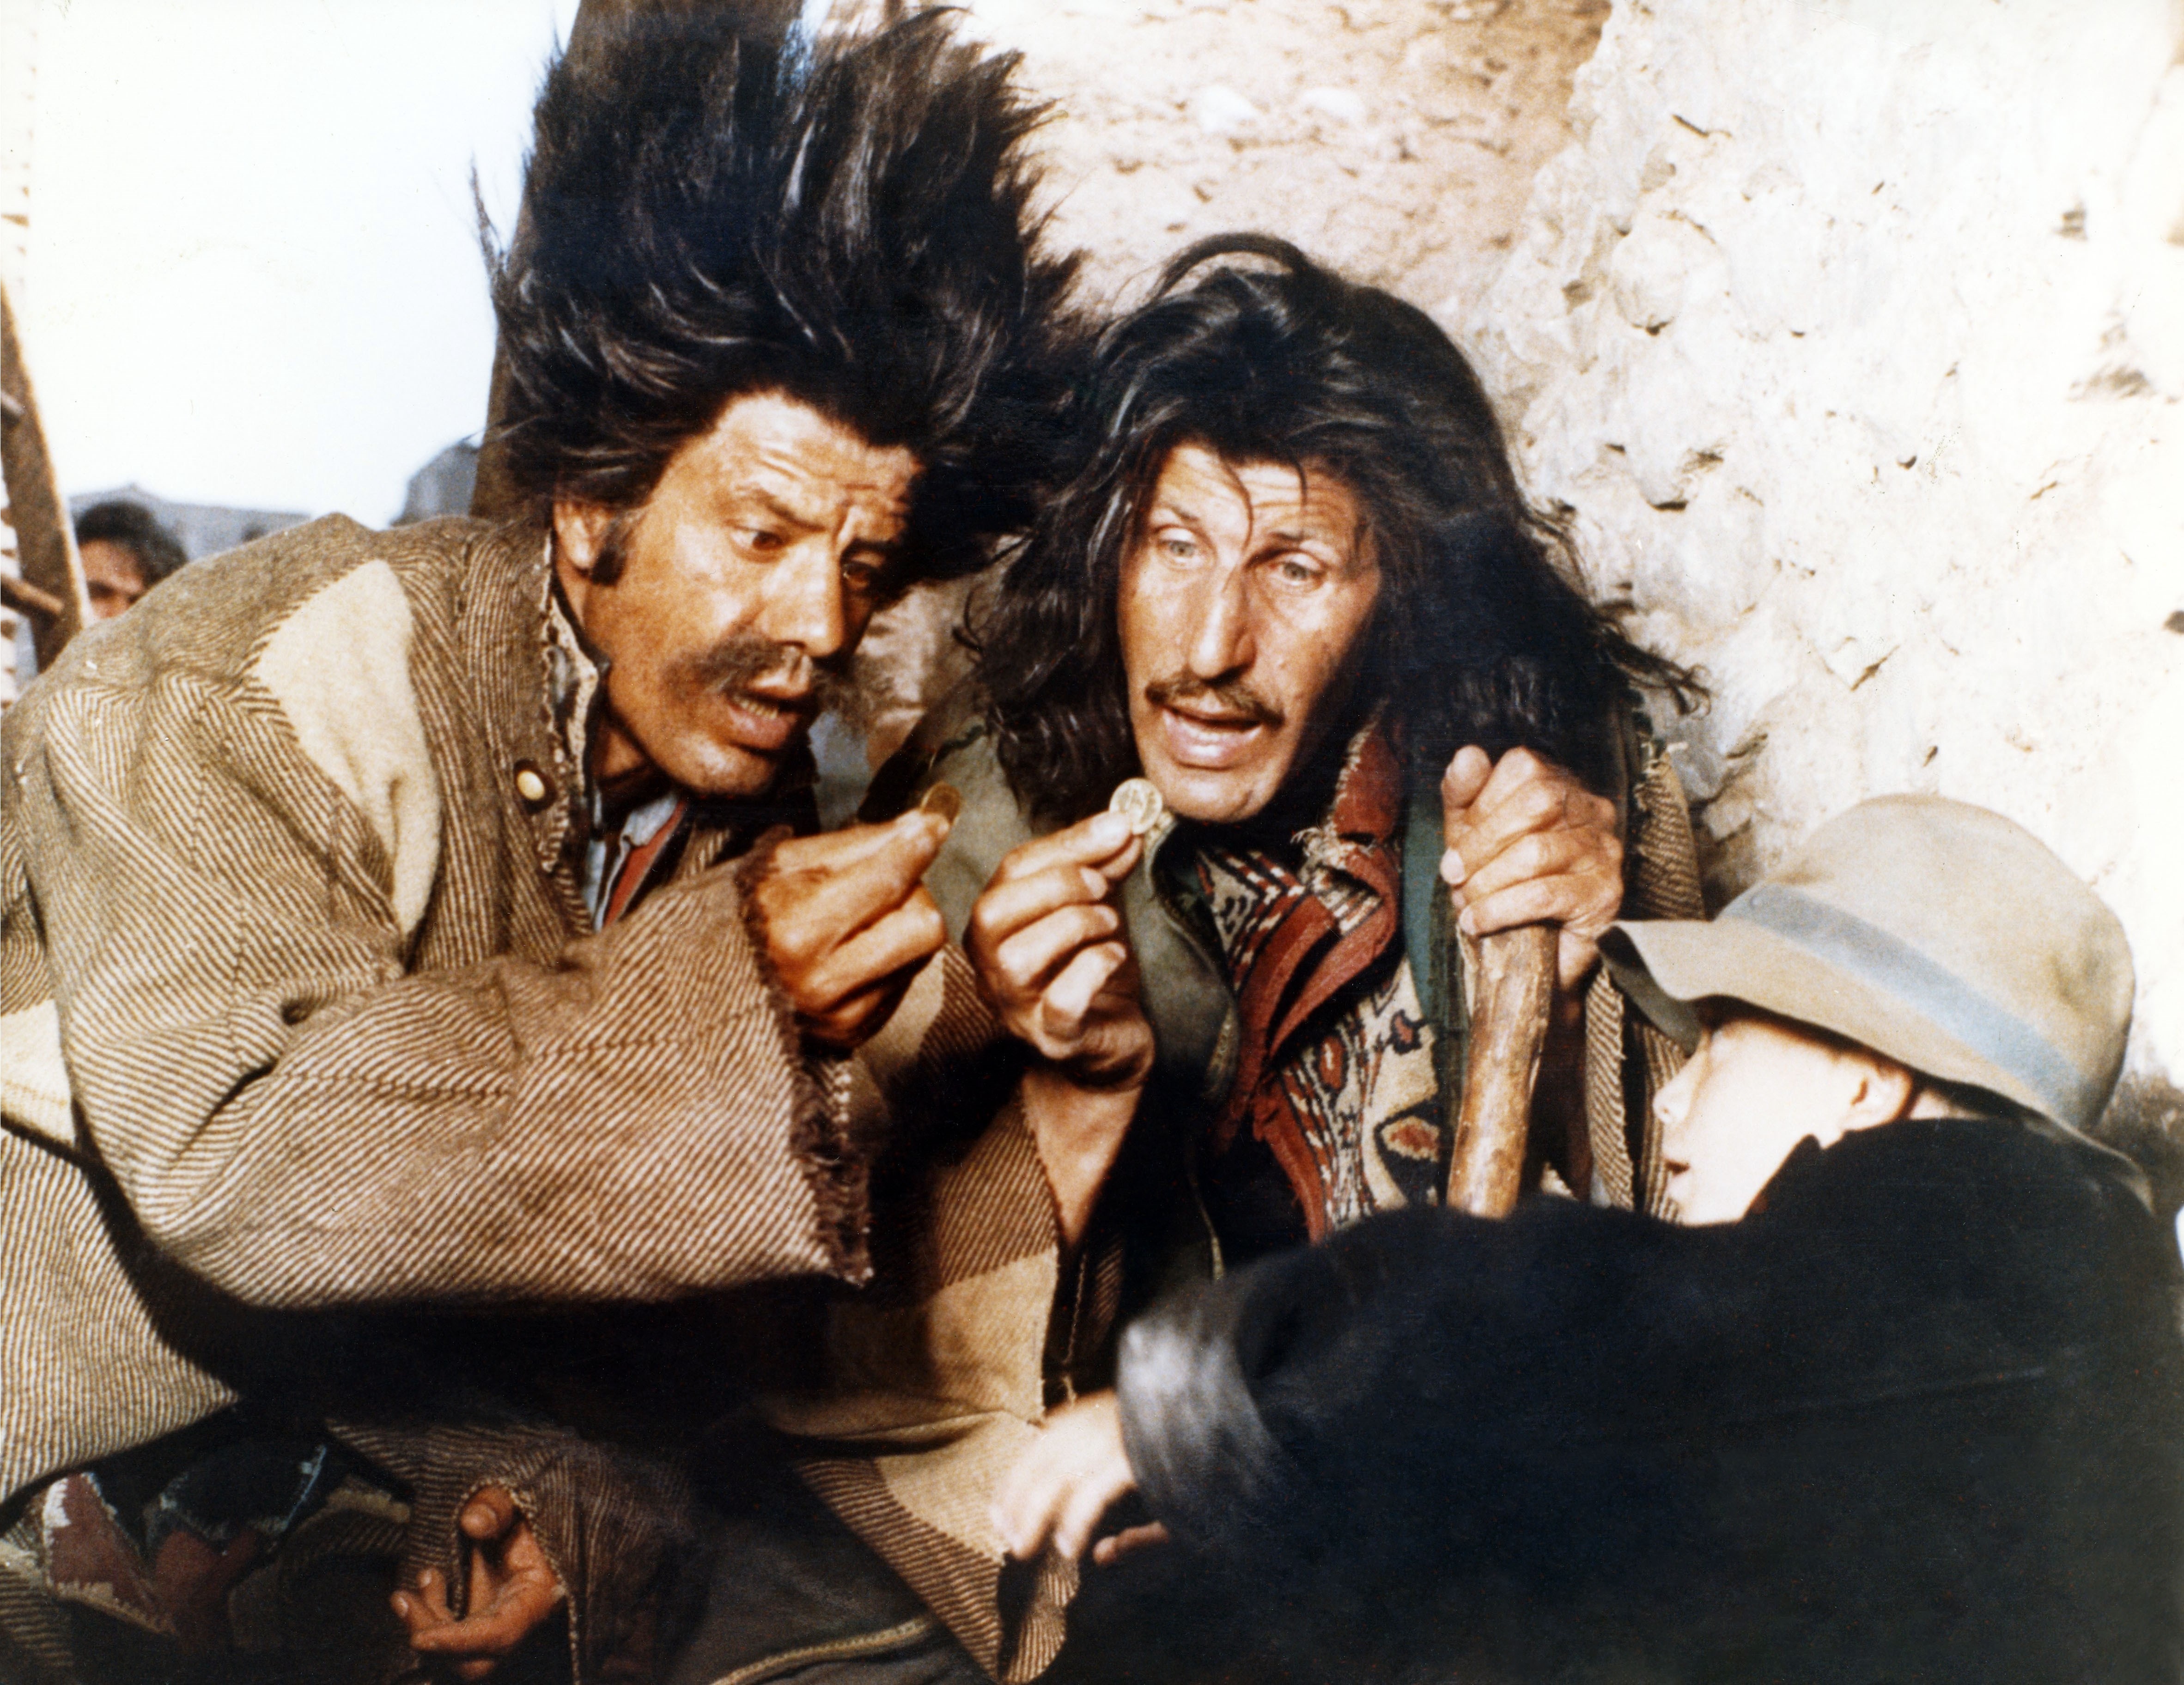 Il Gatto e la Volpe : Franco Franchi e Ciccio Ingrassia, 1972 dallo sceneggiato di Luigi Comencini